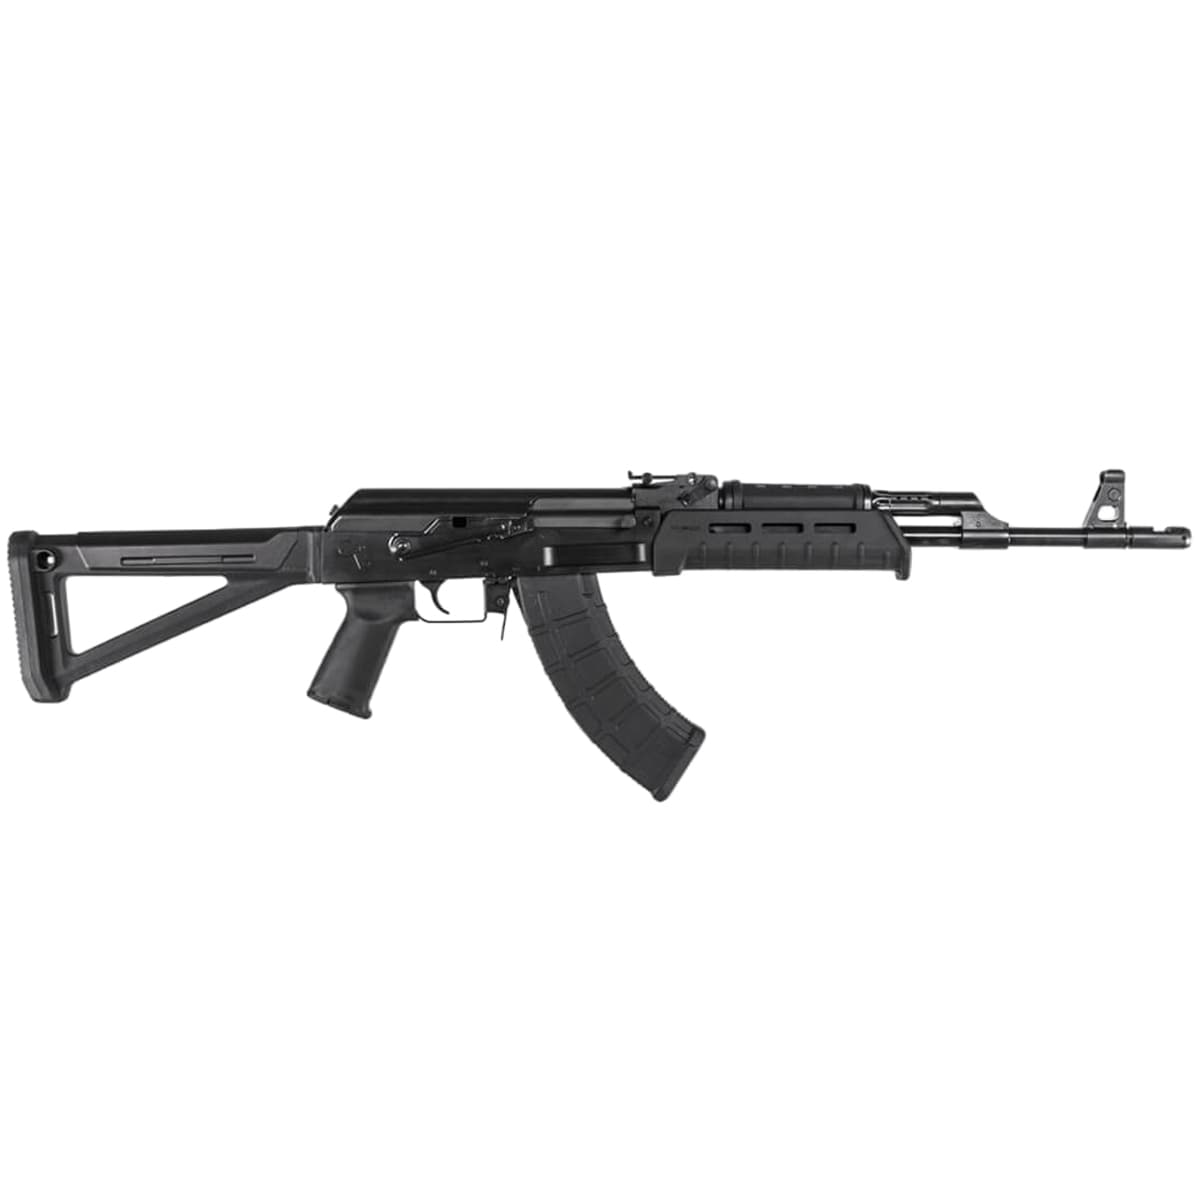 Магазин на 30 патронів Magpul PMAG 30 AK/AKM MOE кал. 7.62 x 39 мм для гвинтівок AK-47/AKM - Black